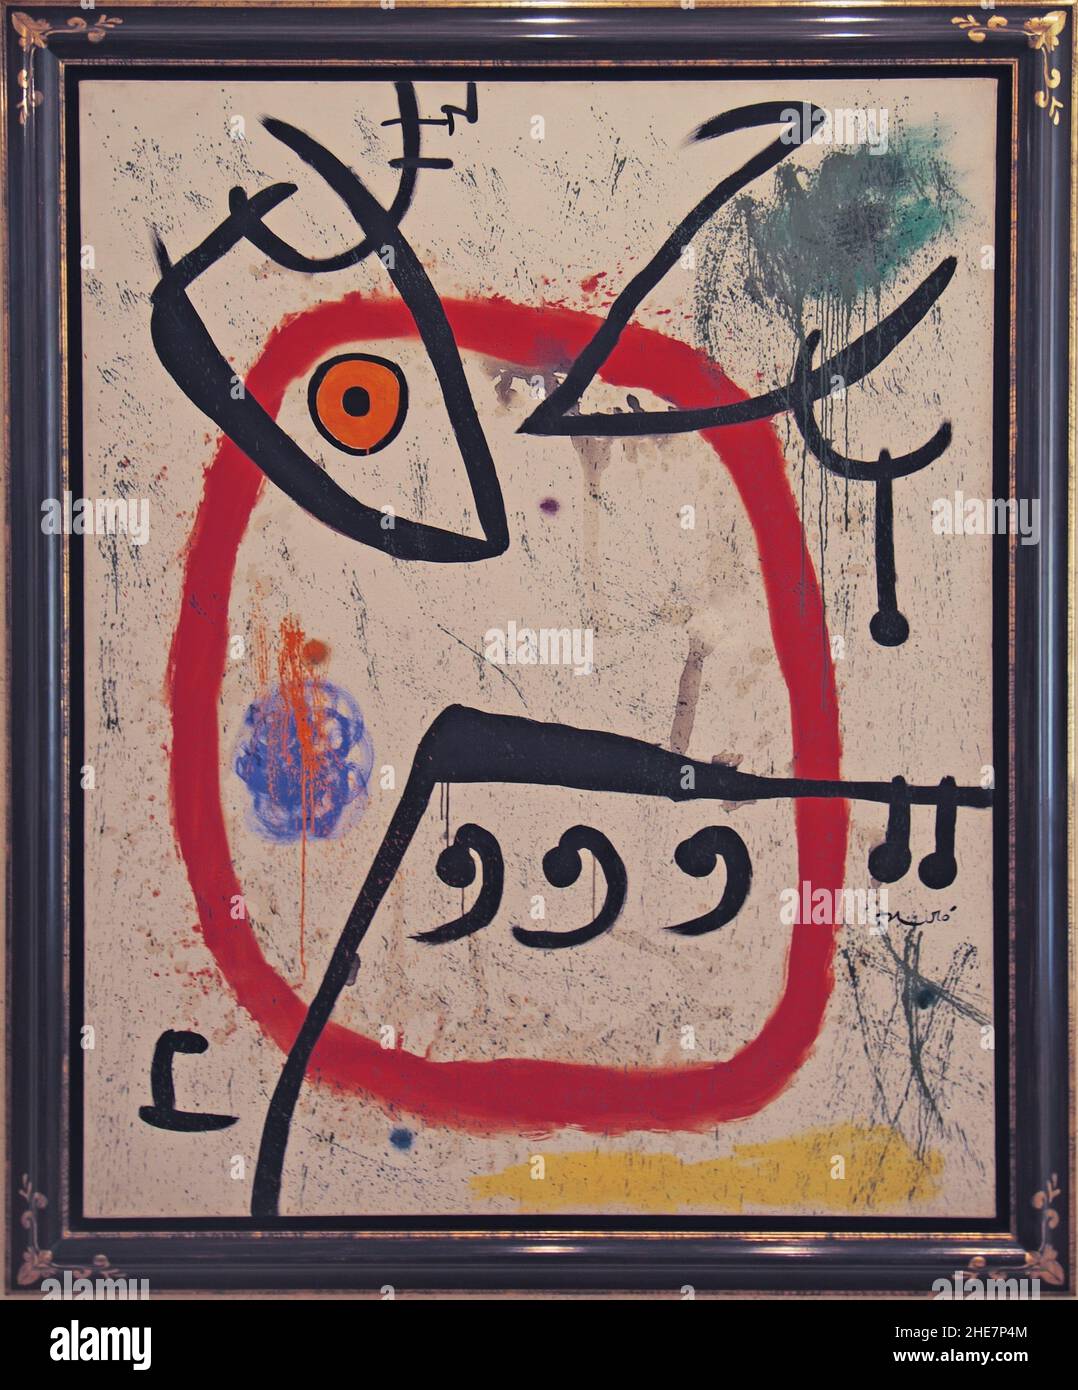 Museo Miró, Pilar i Joan Miró-Stiftung, alcune Espangnole, Öl auf Leinwand, 1972, 163x131 cm, , Palma di Maiorca, Maiorca, Spagna, Europa | Miró Mus Foto Stock